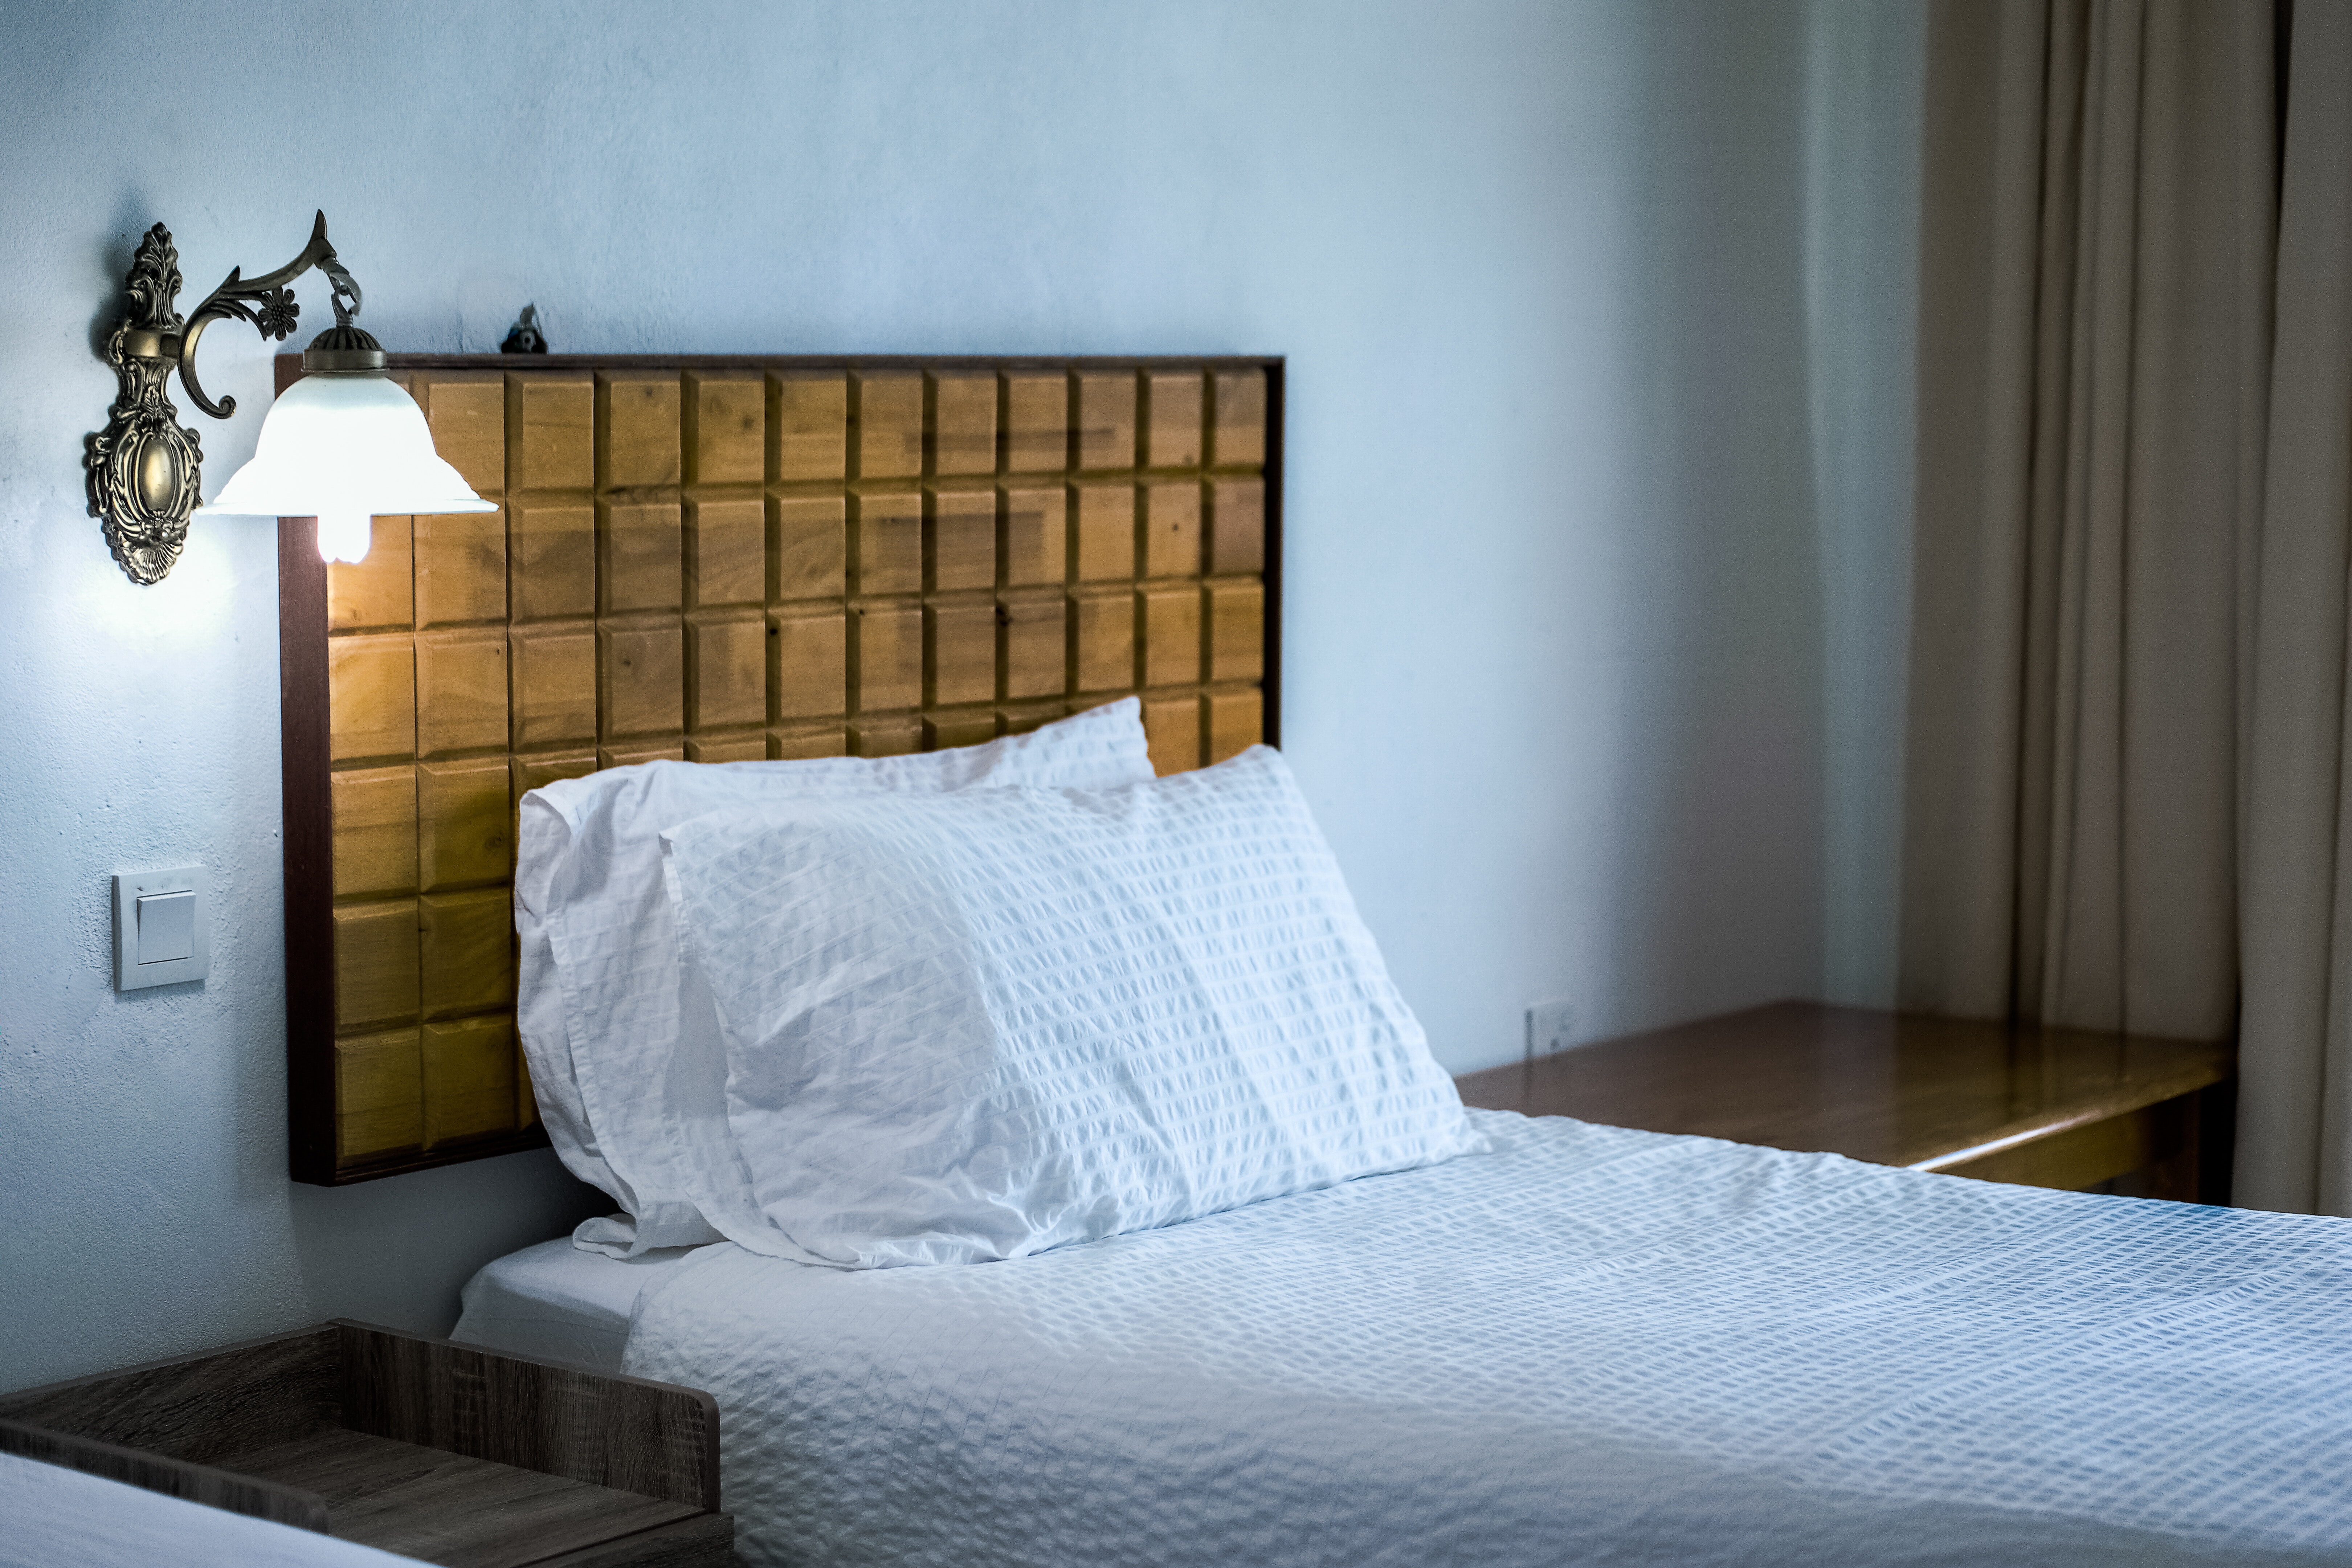 Lampy ścienne – praktyczne i eleganckie rozwiązanie każdego wnętrza